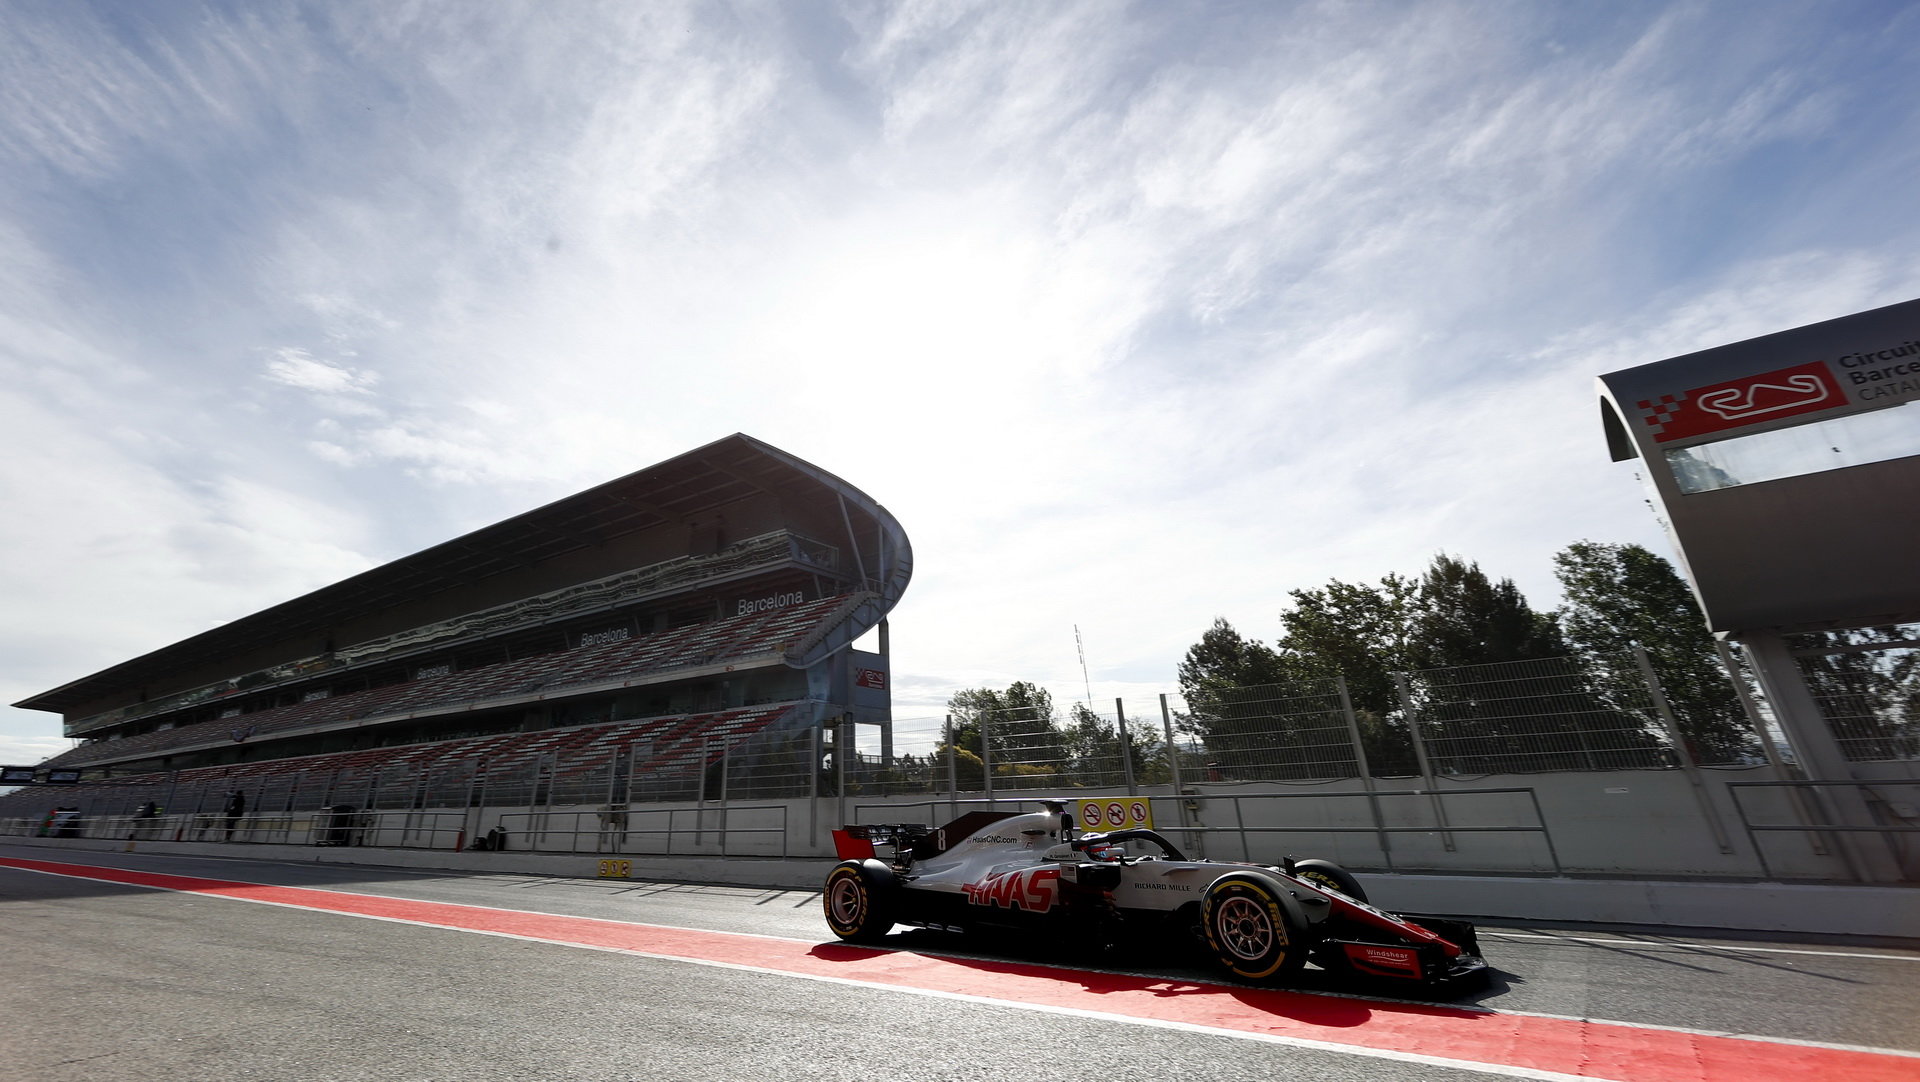 Romain Grosjean v prvním dni testů v Barceloně